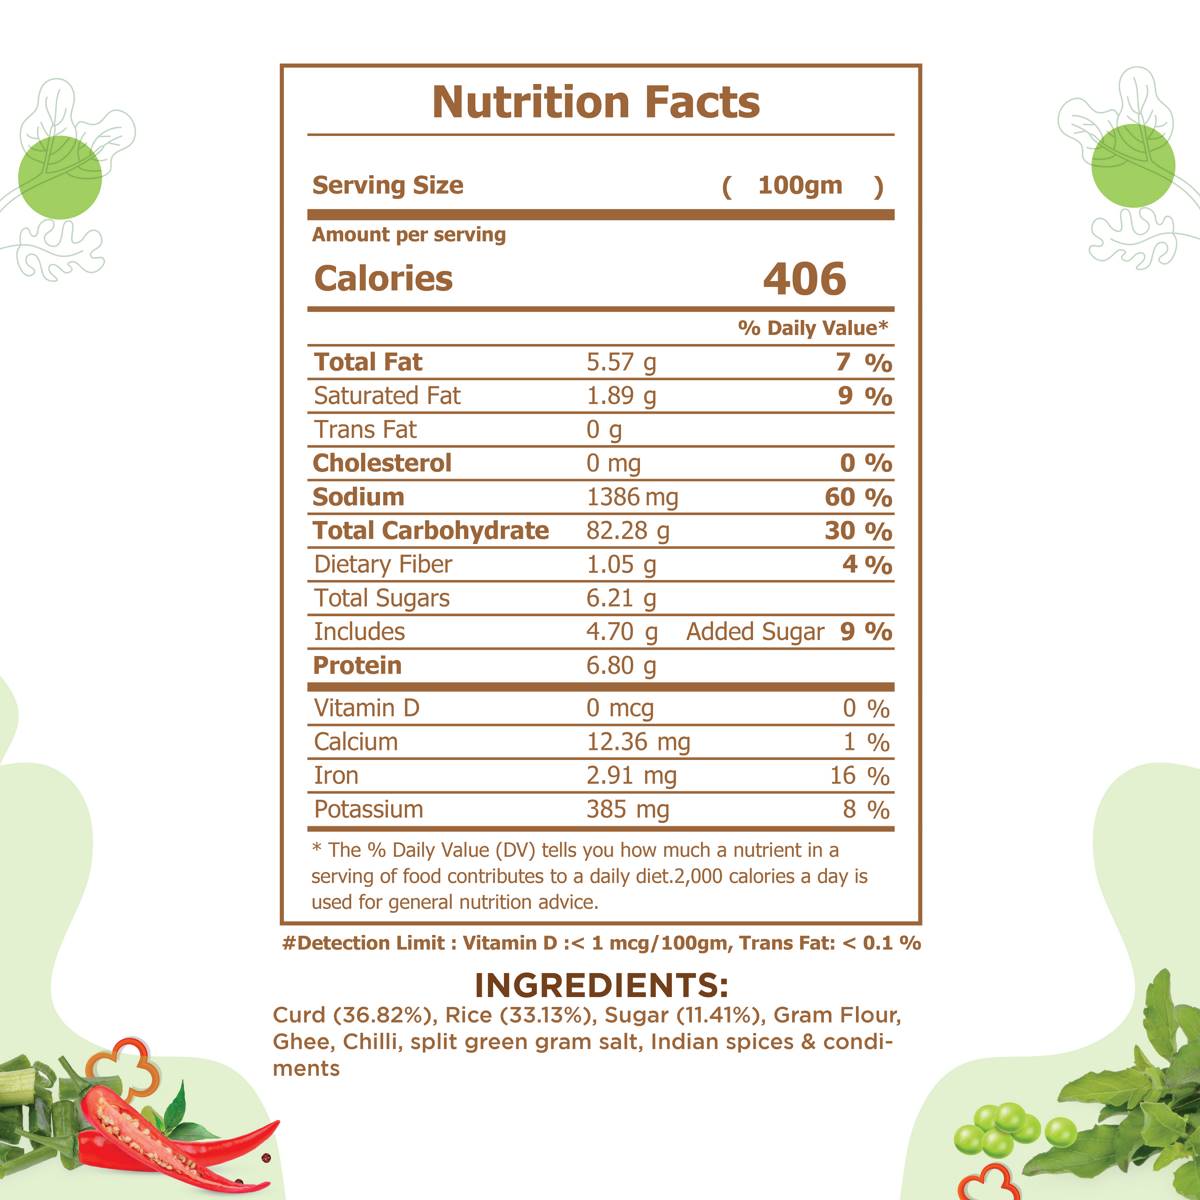 Jain khichdi kadhi - Nutrition Facts